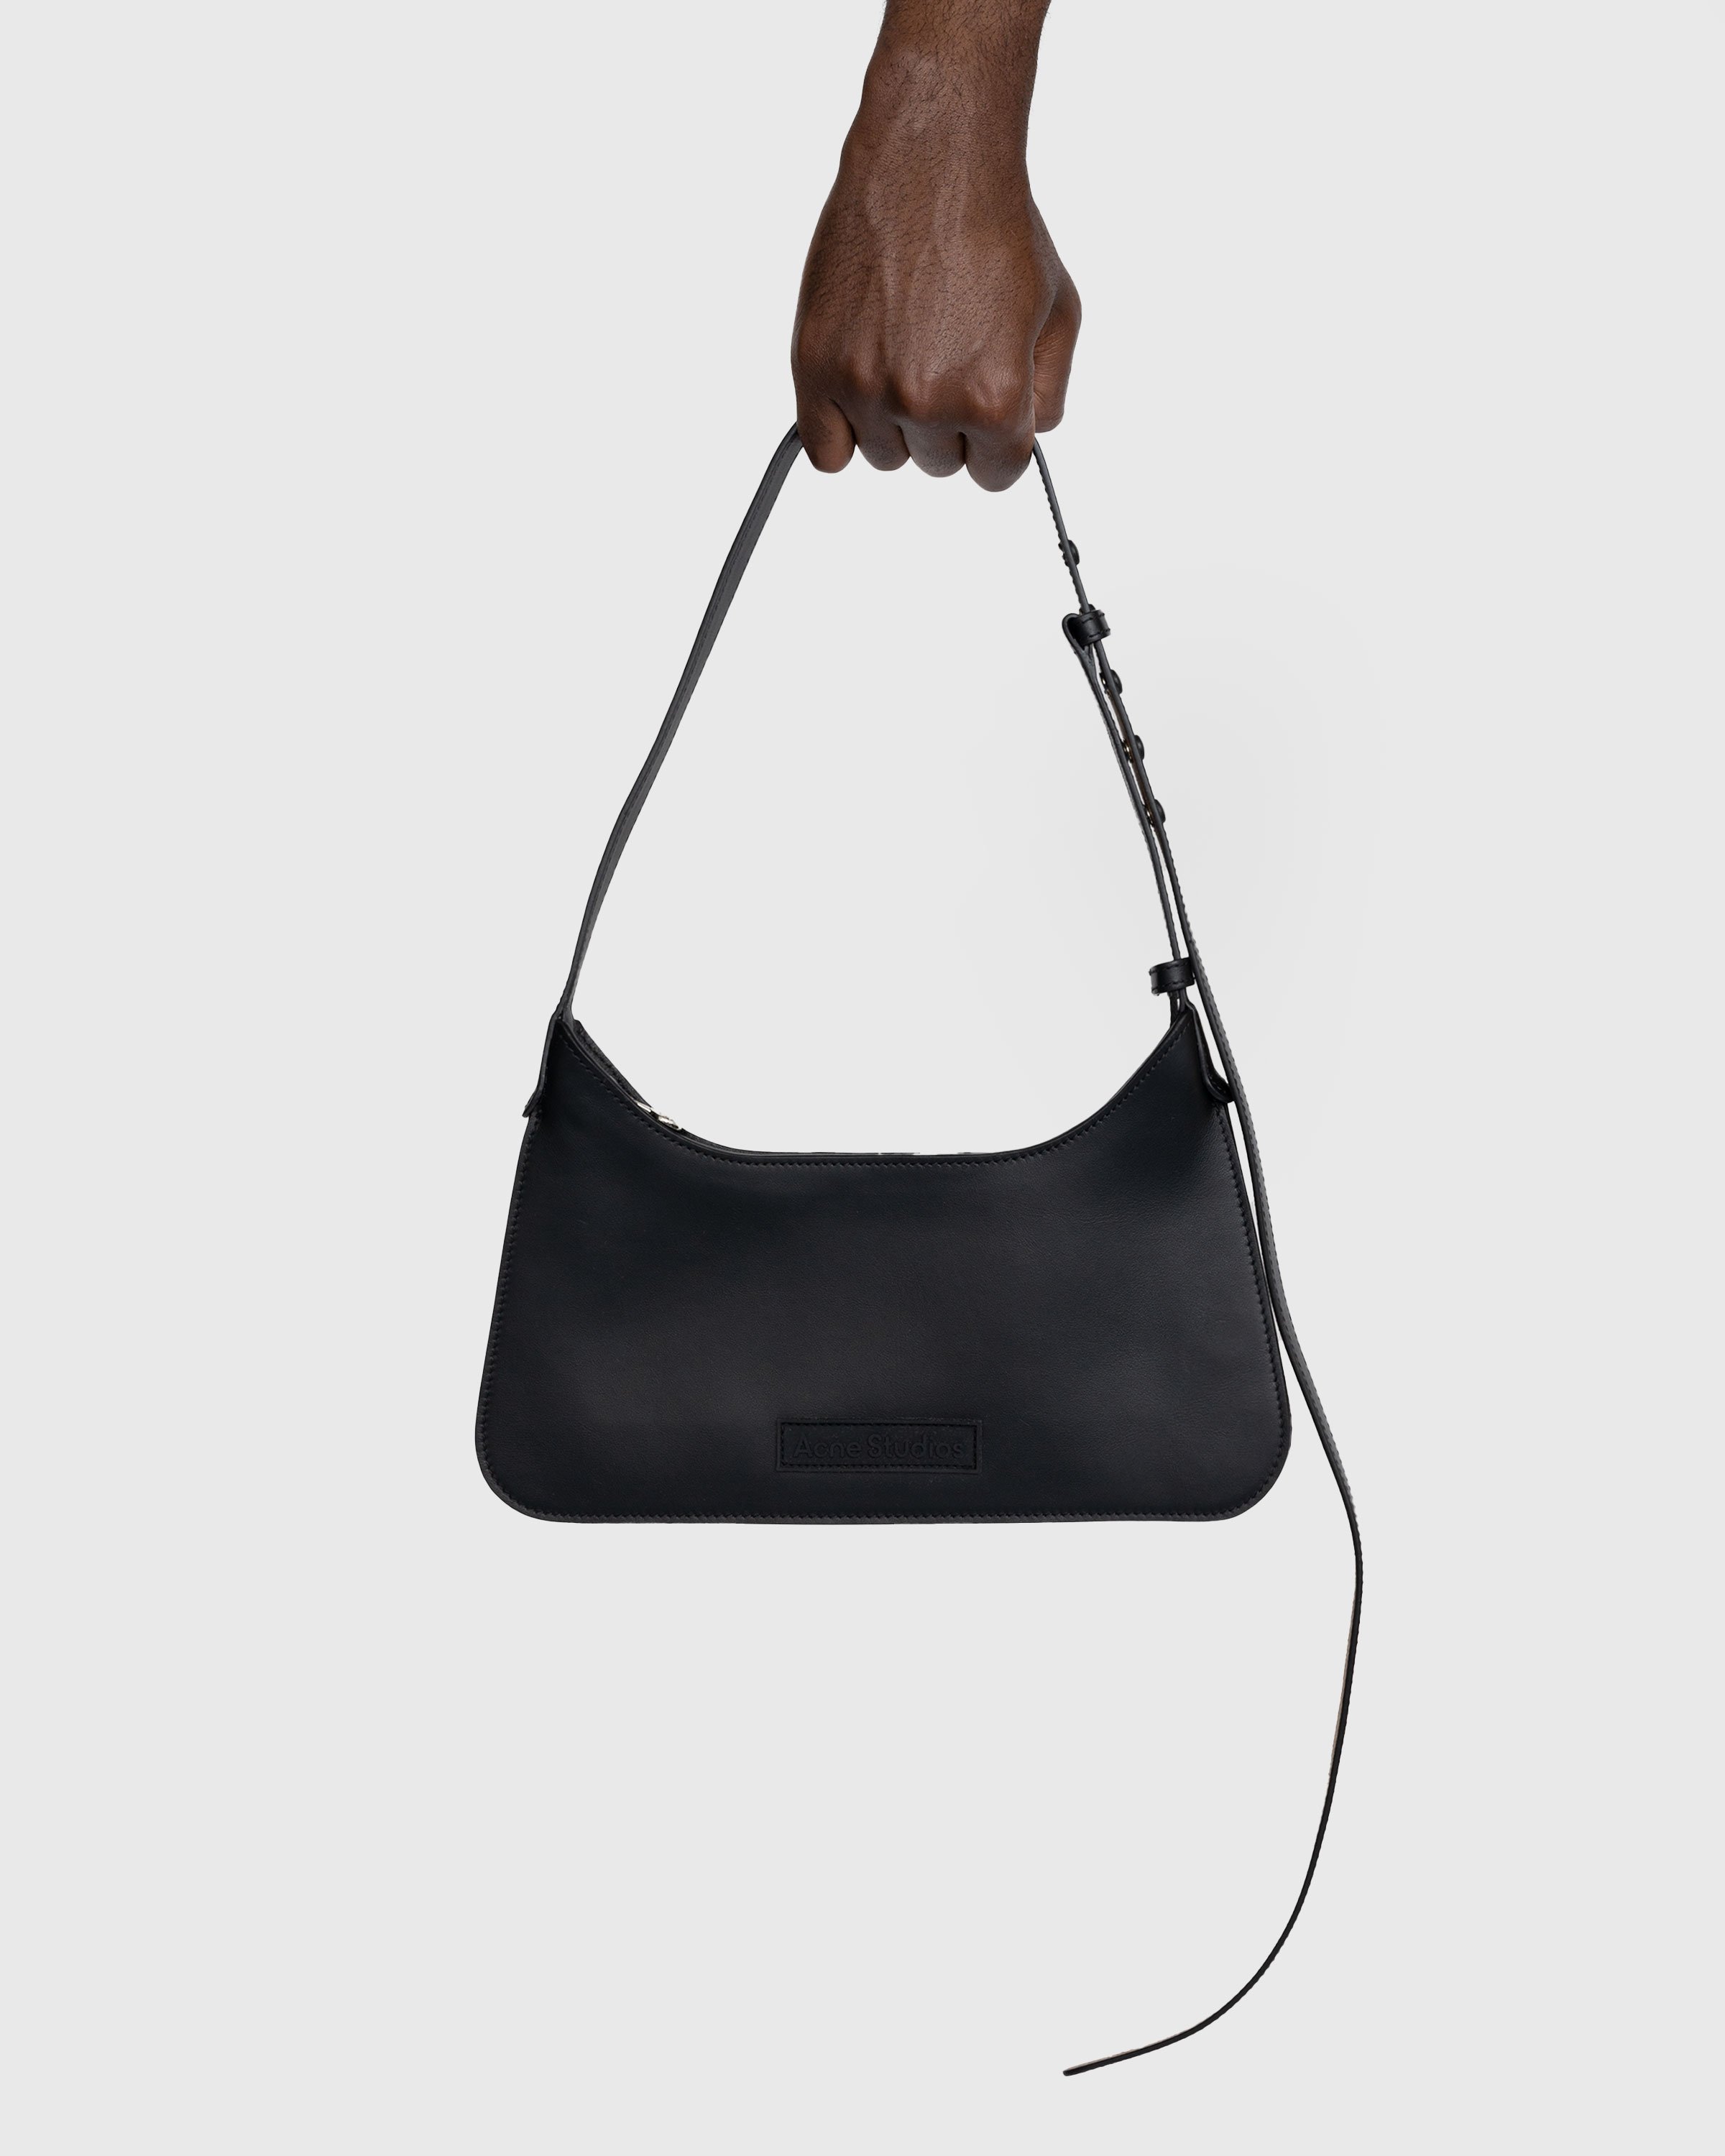 Acne Studios - Platt Mini Shoulder Bag Black - Accessories - Black - Image 3